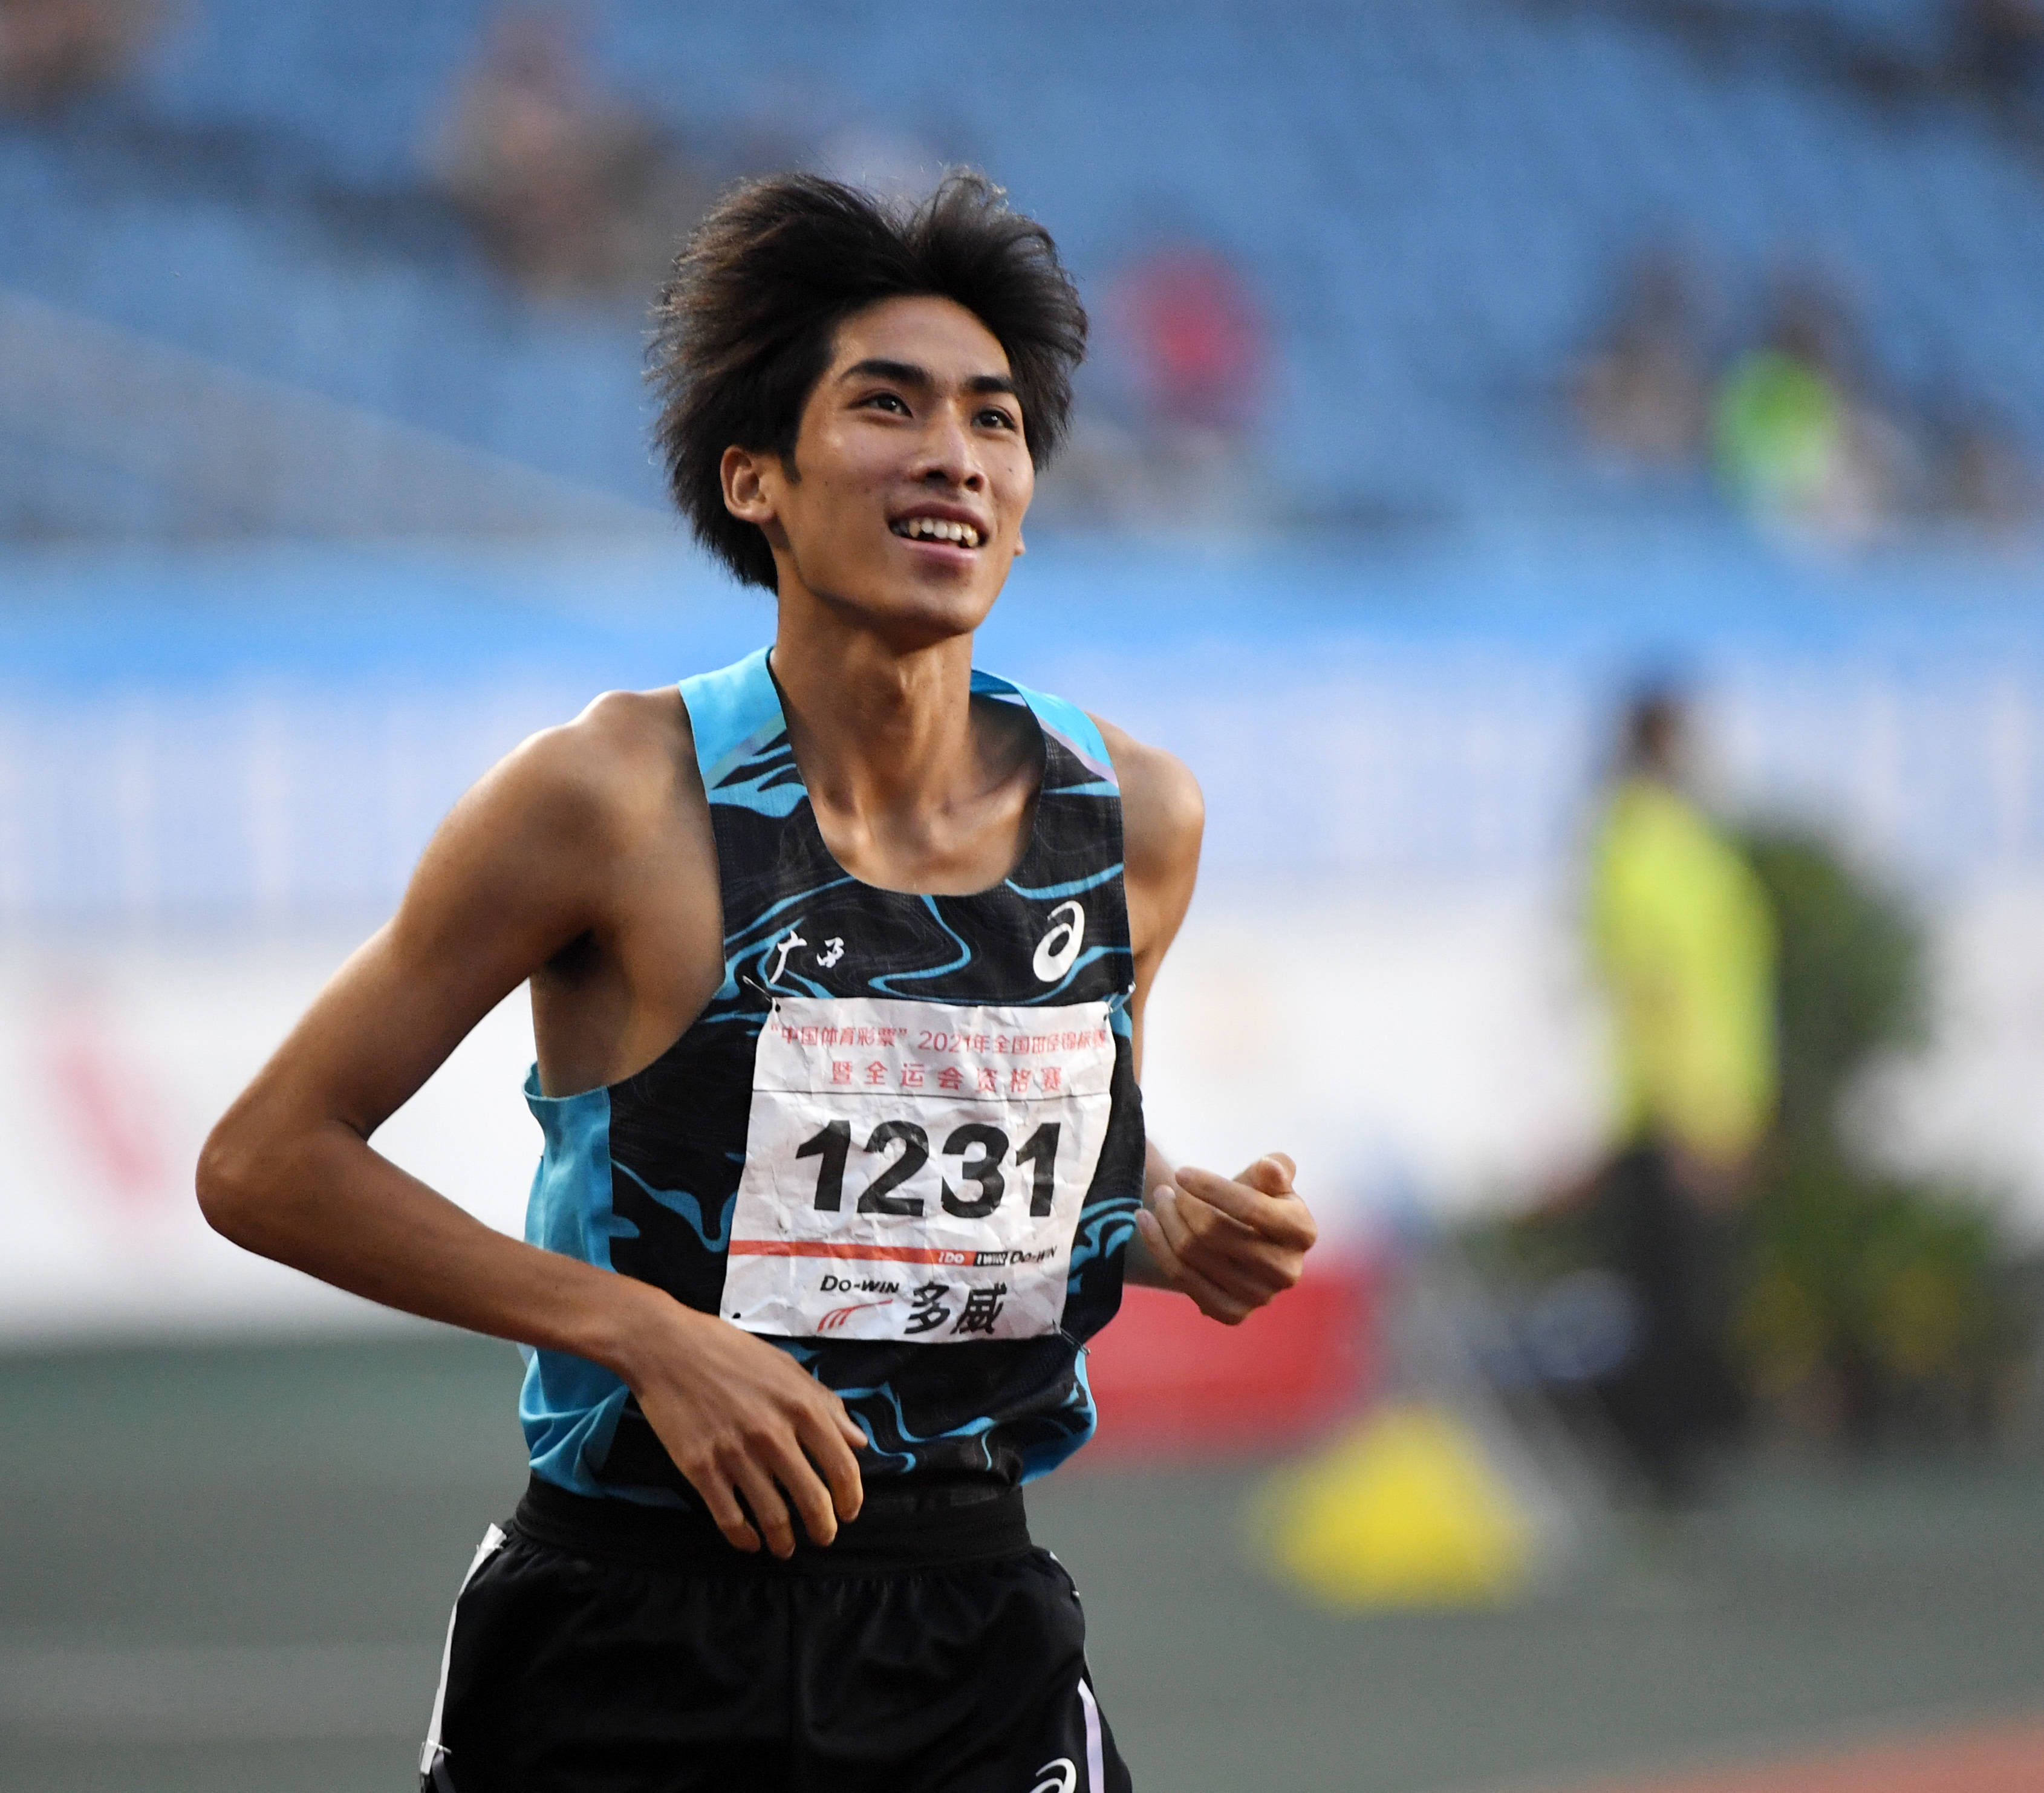 广西队选手刘德助以3分43秒36的成绩夺得冠军